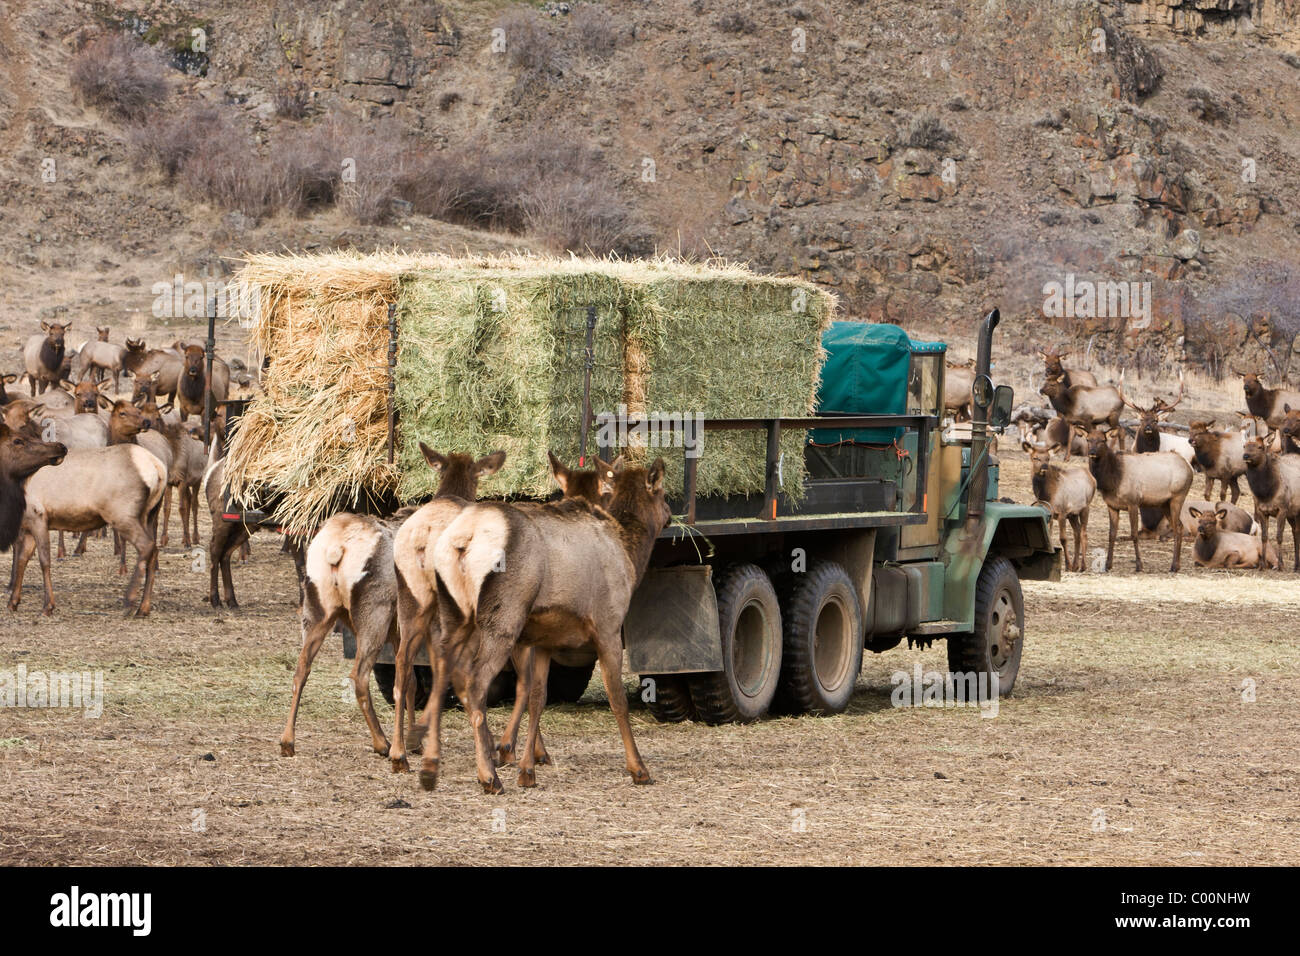 Rocky Mountain elk seguire un carrello di alimentazione a Oak Creek Wildlife Area vicino Naches, Washington. Foto Stock